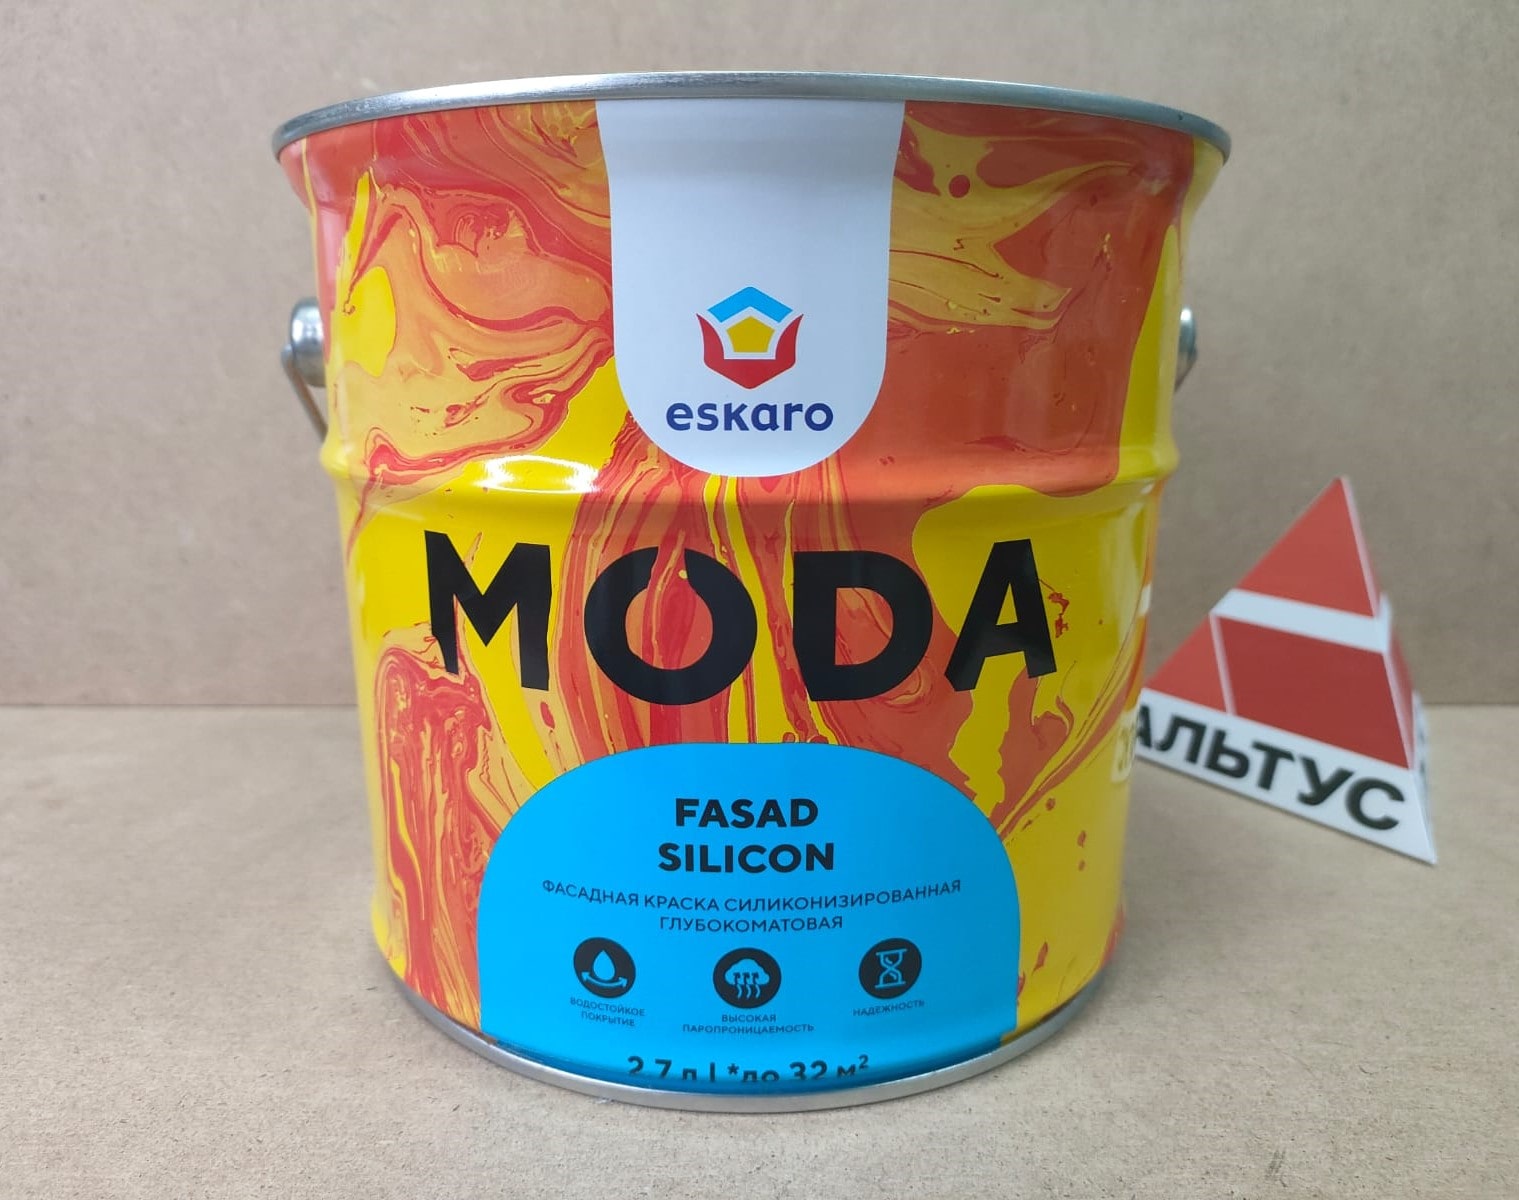 Фасадная краска силиконизированная глубокоматовая Eskaro MODA Fasad Silicon (База А - белая) 2.7 л